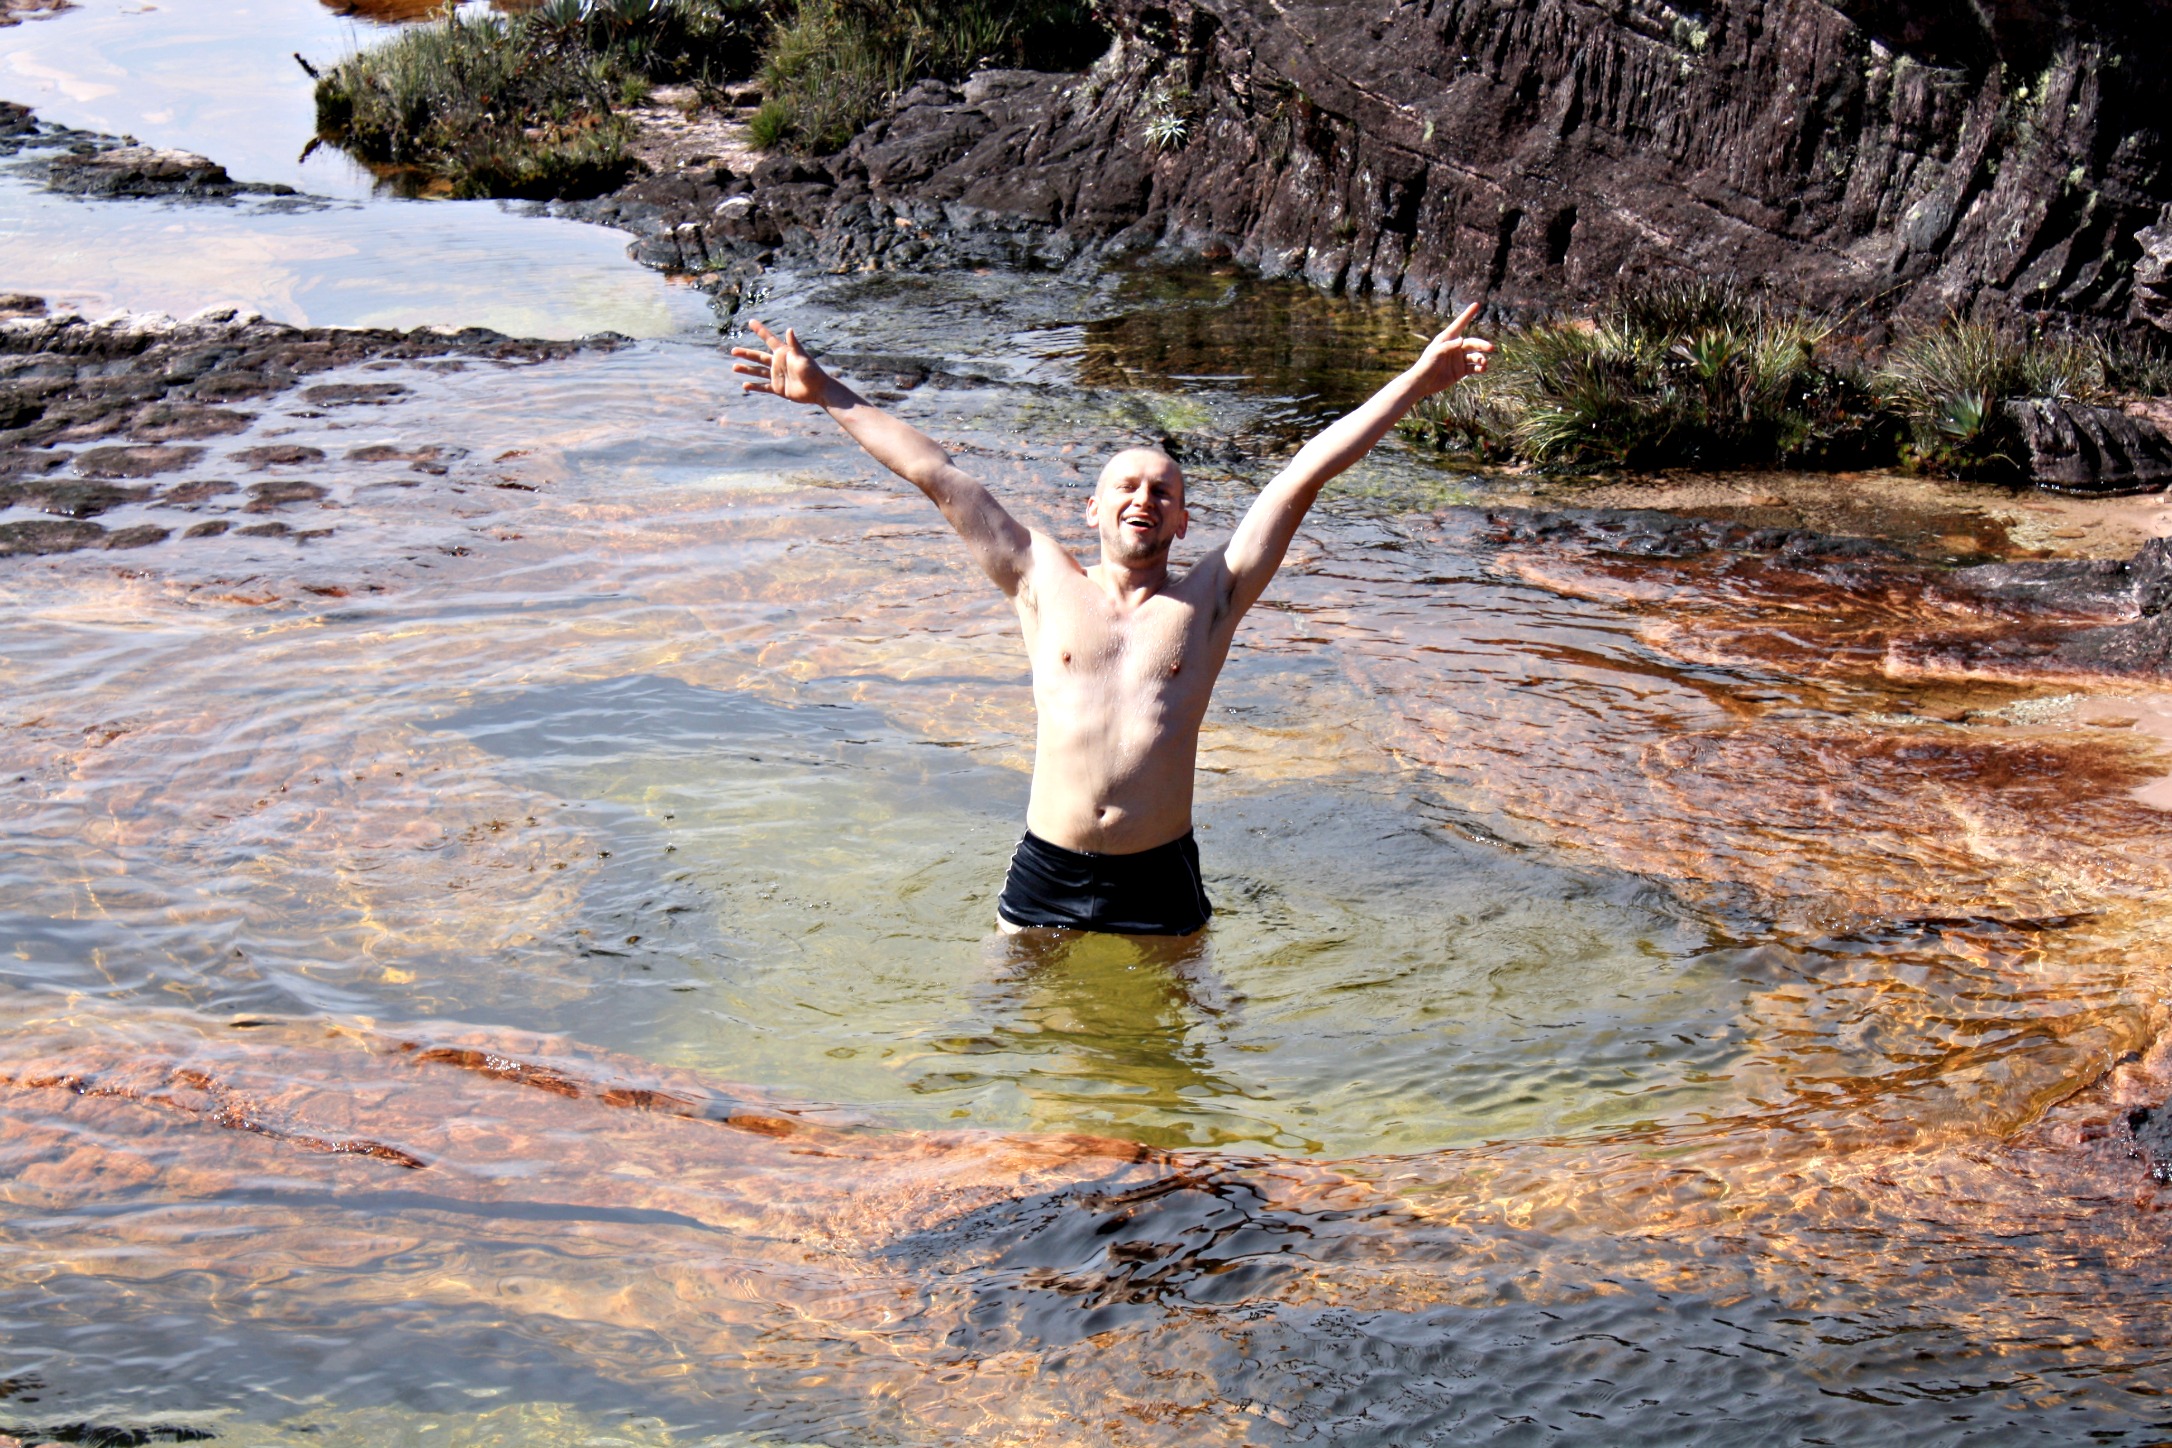 Mount Roraima Pools